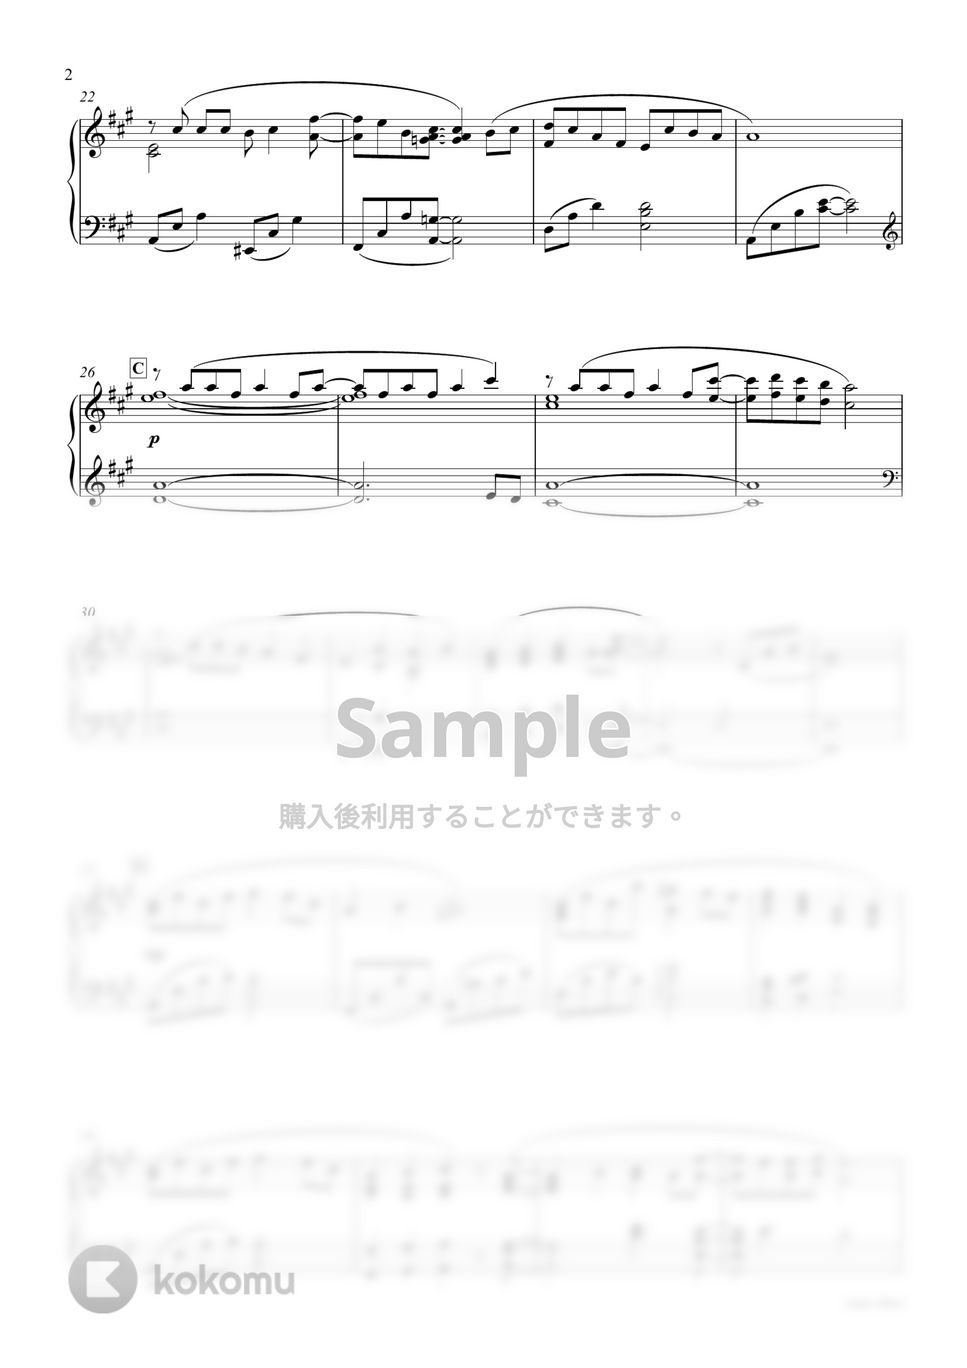 『逃げるは恥だが役に立つ』 - 恋 Piano ver. (Instrumental) by sammy